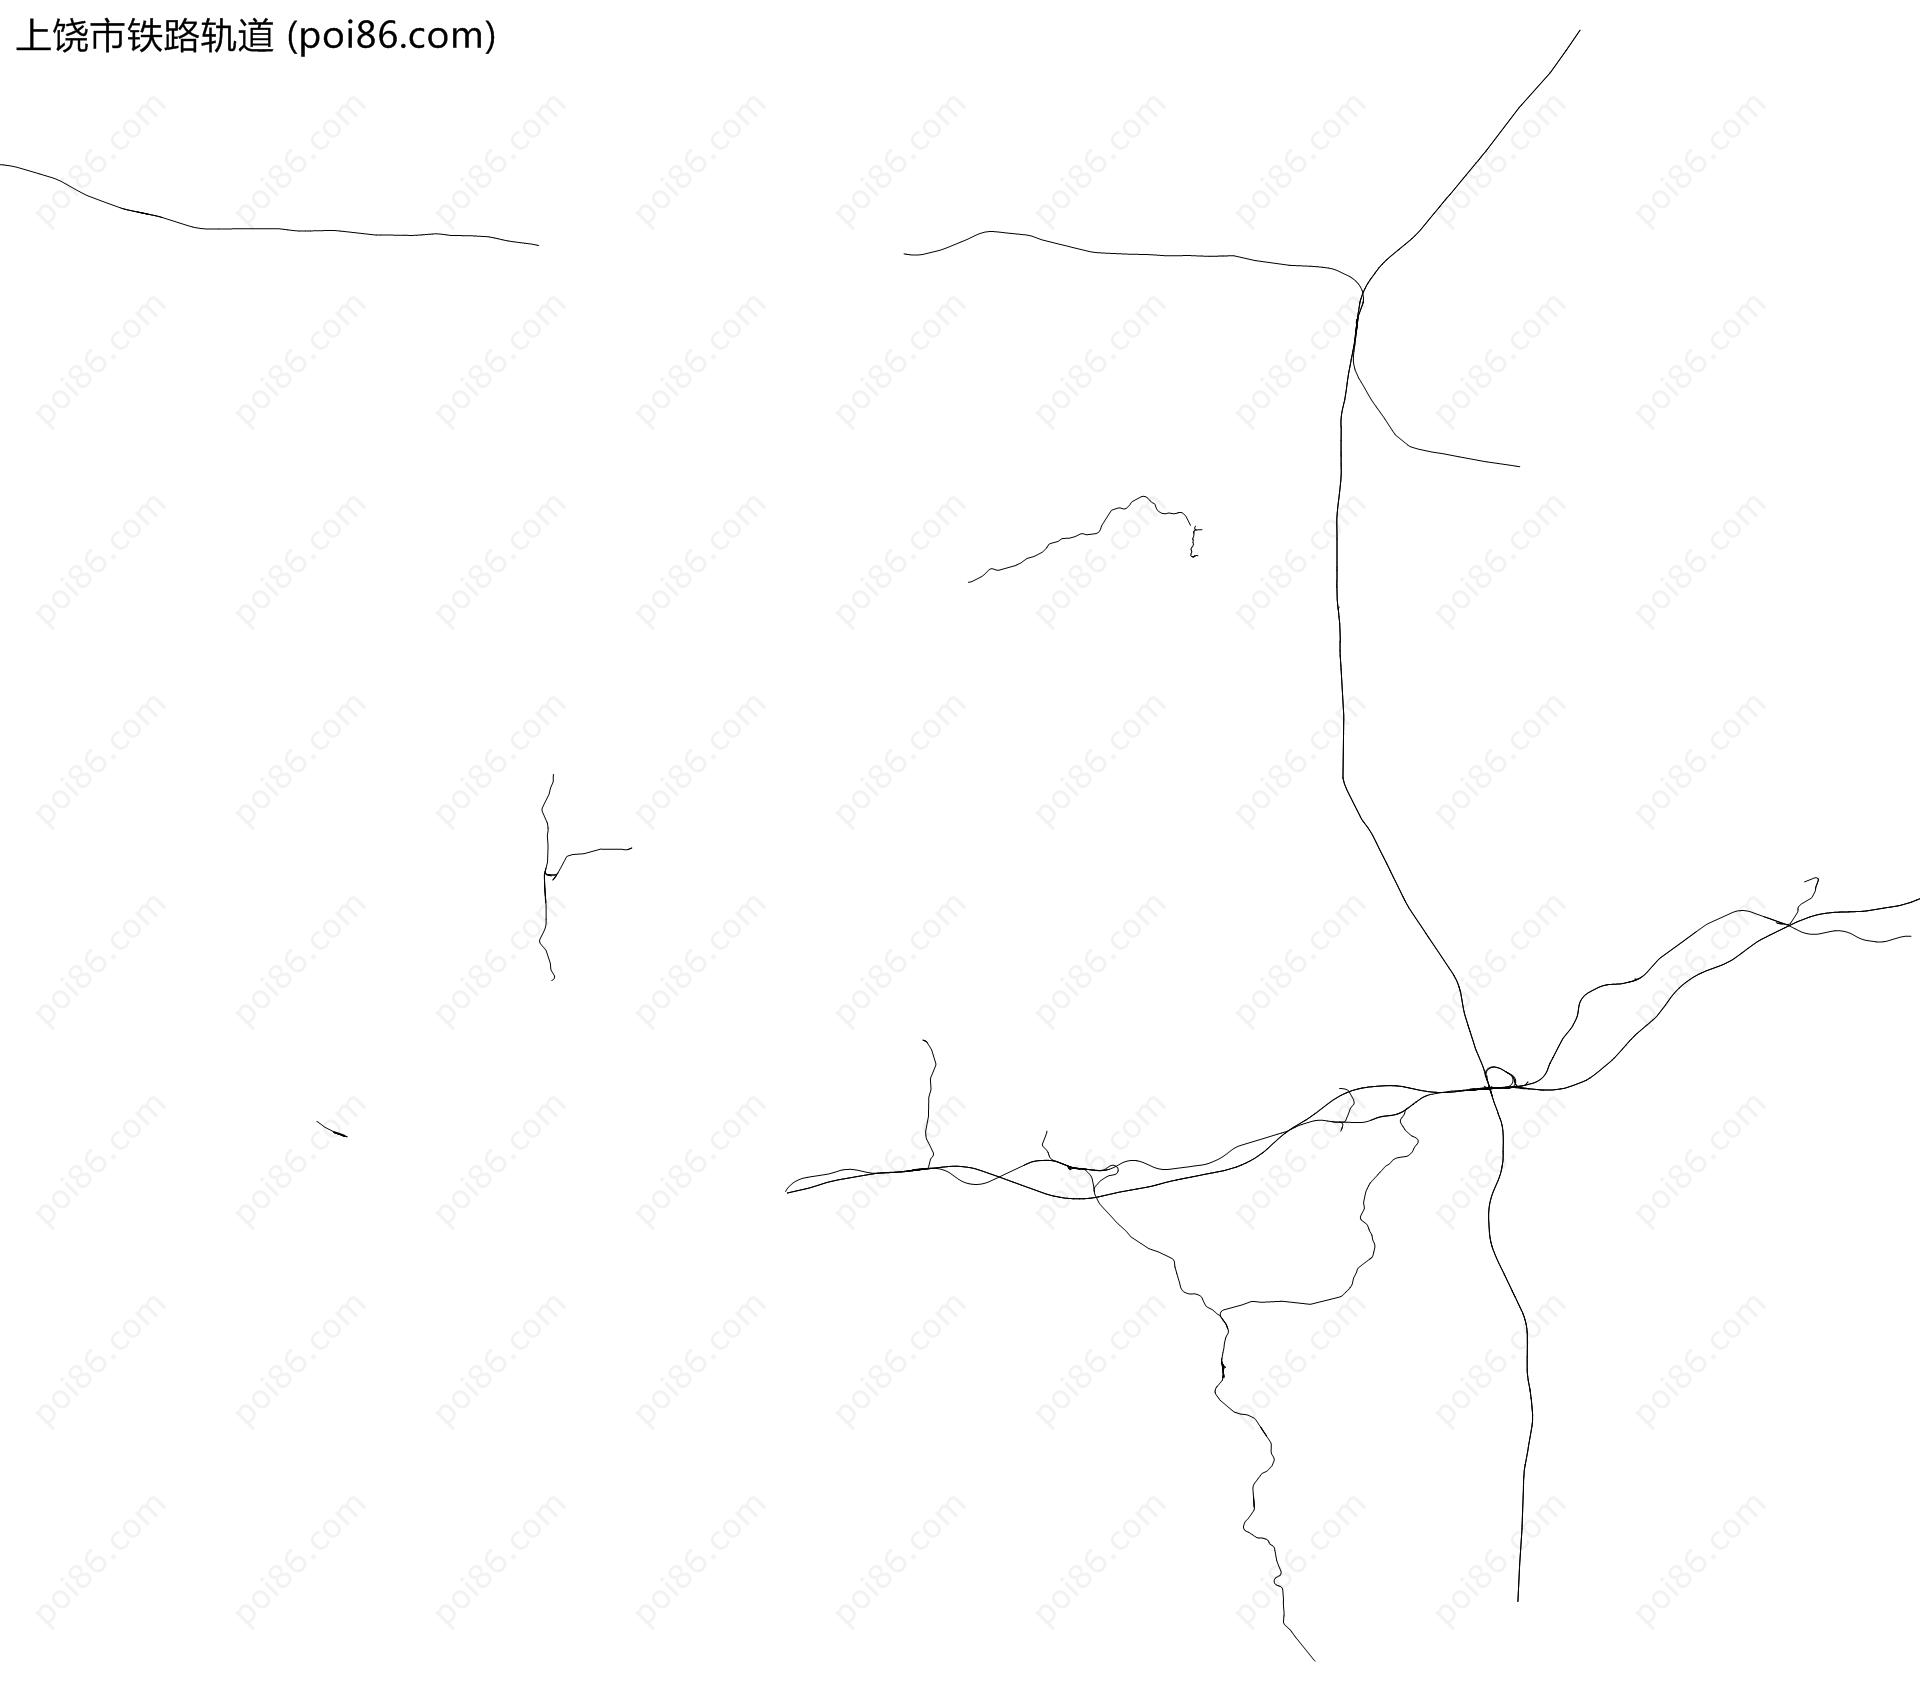 上饶市铁路轨道地图